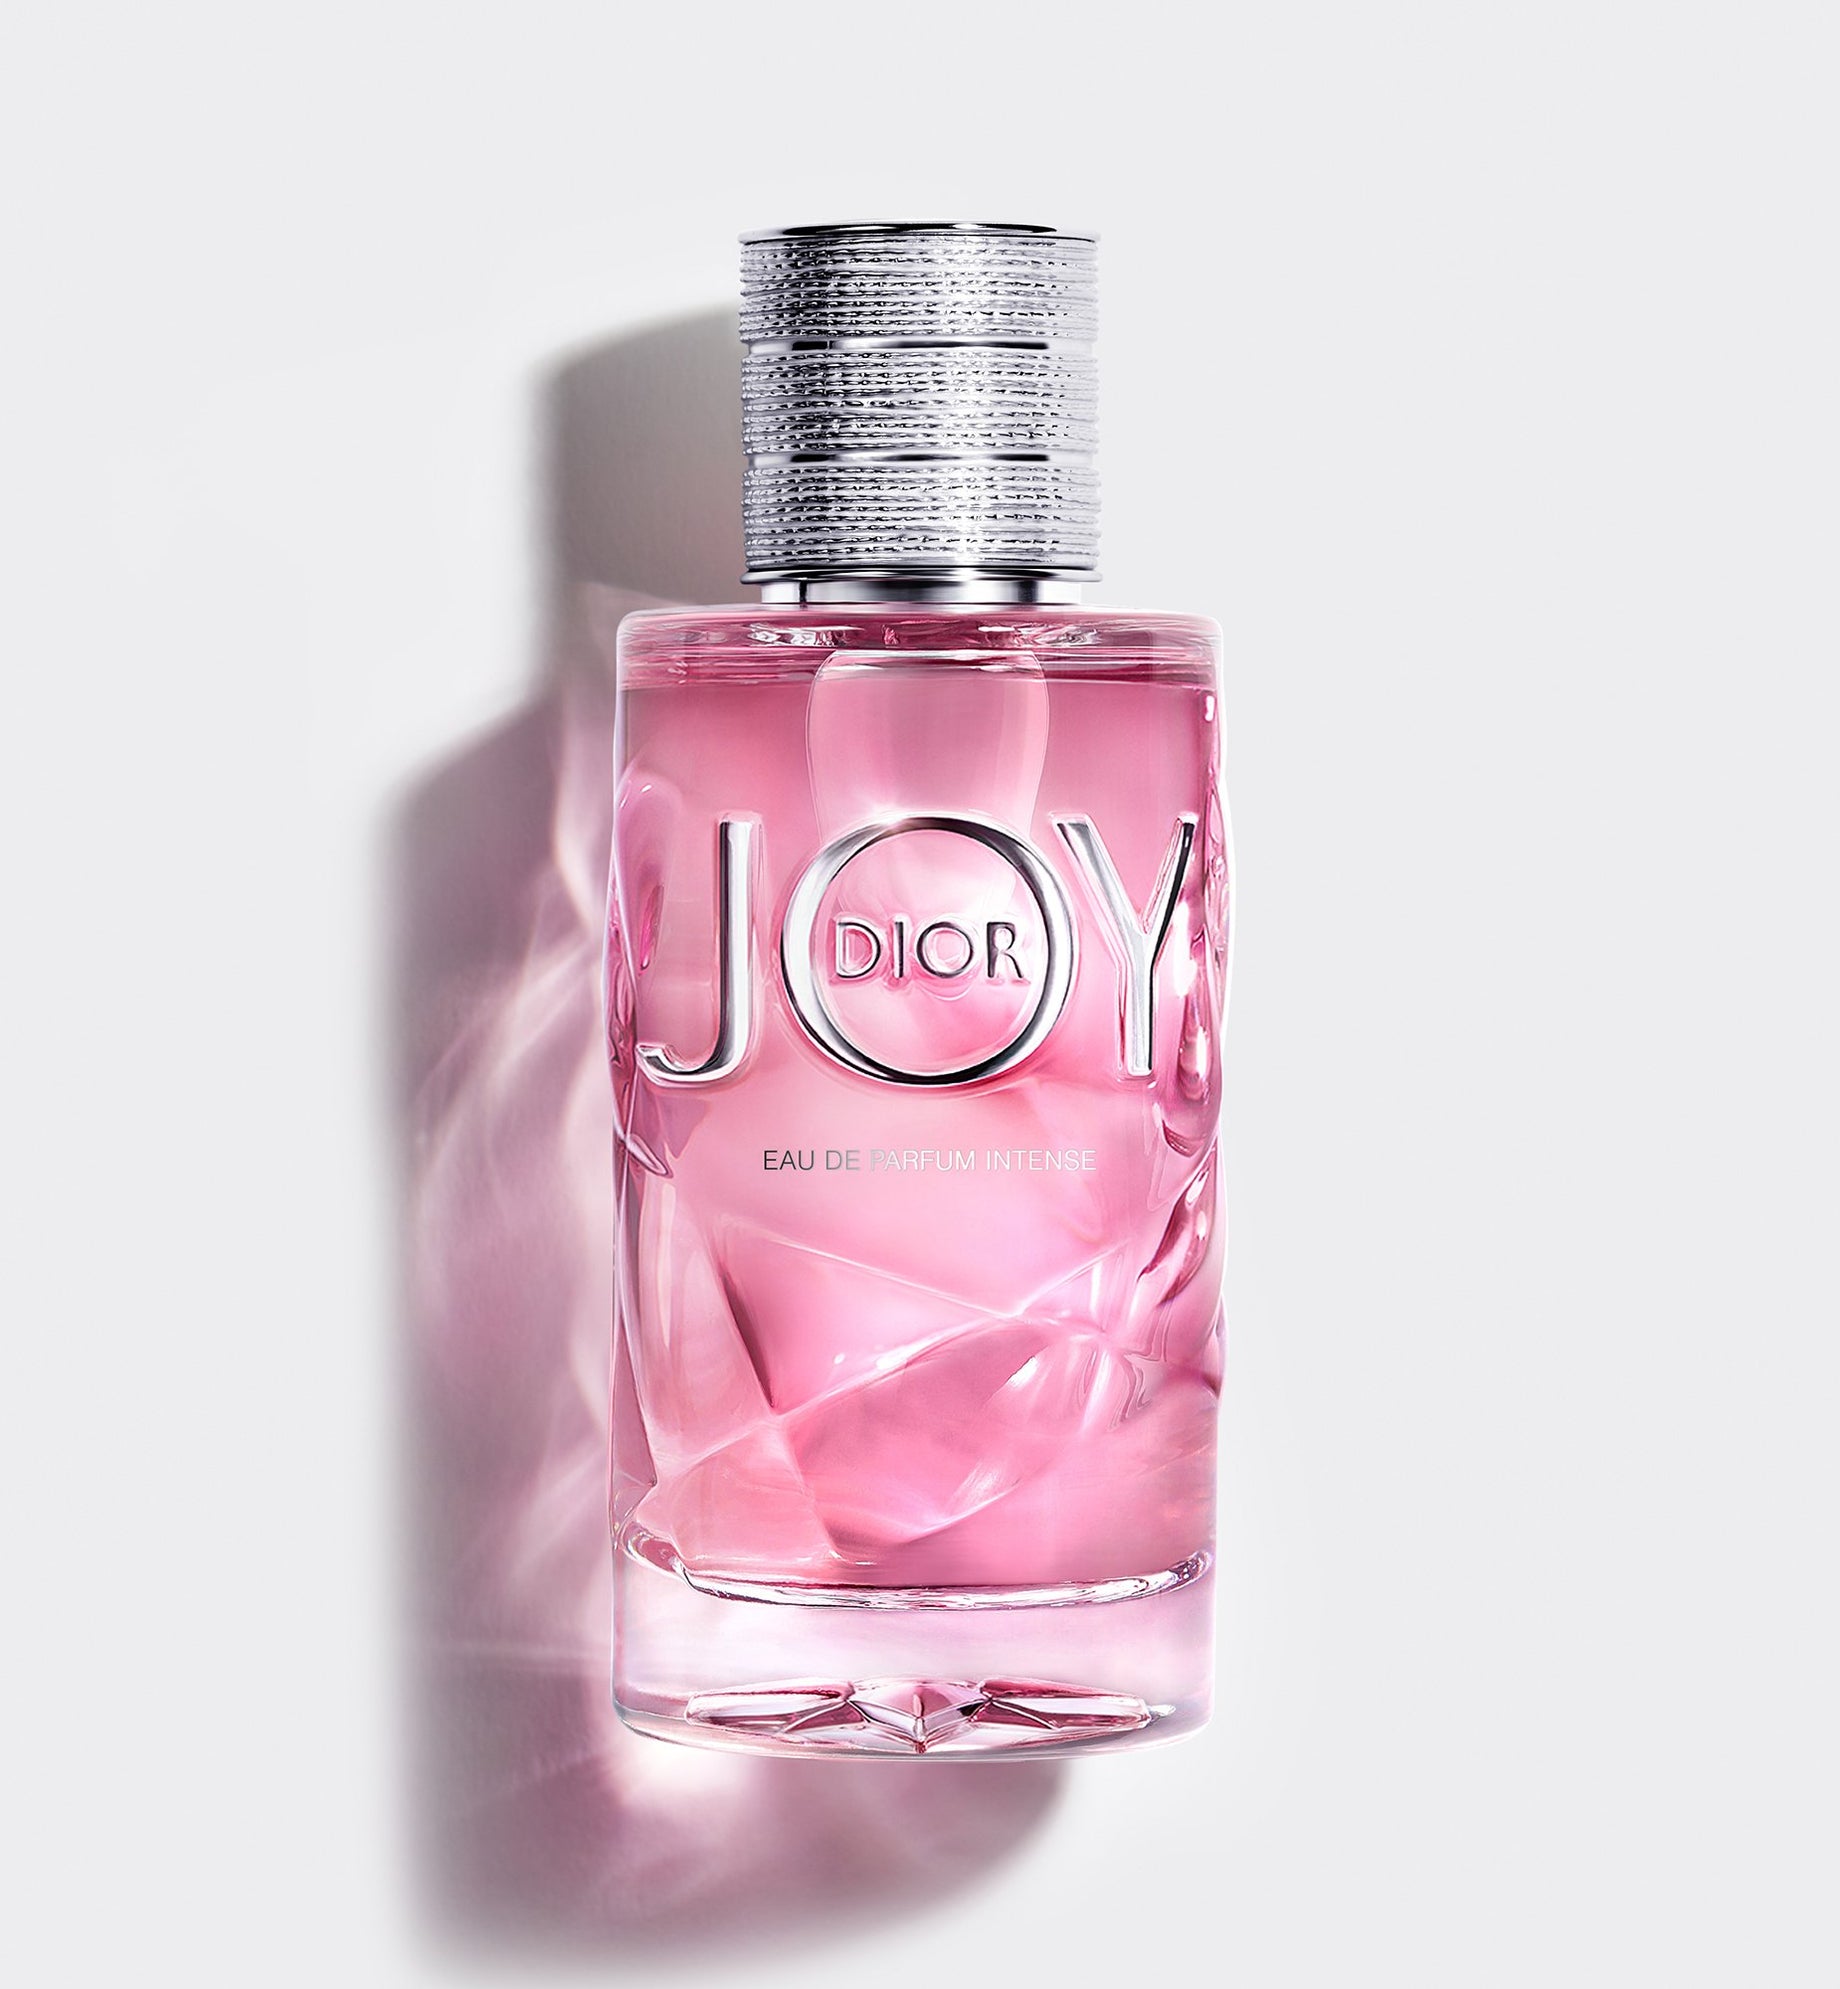 dior parfum intense